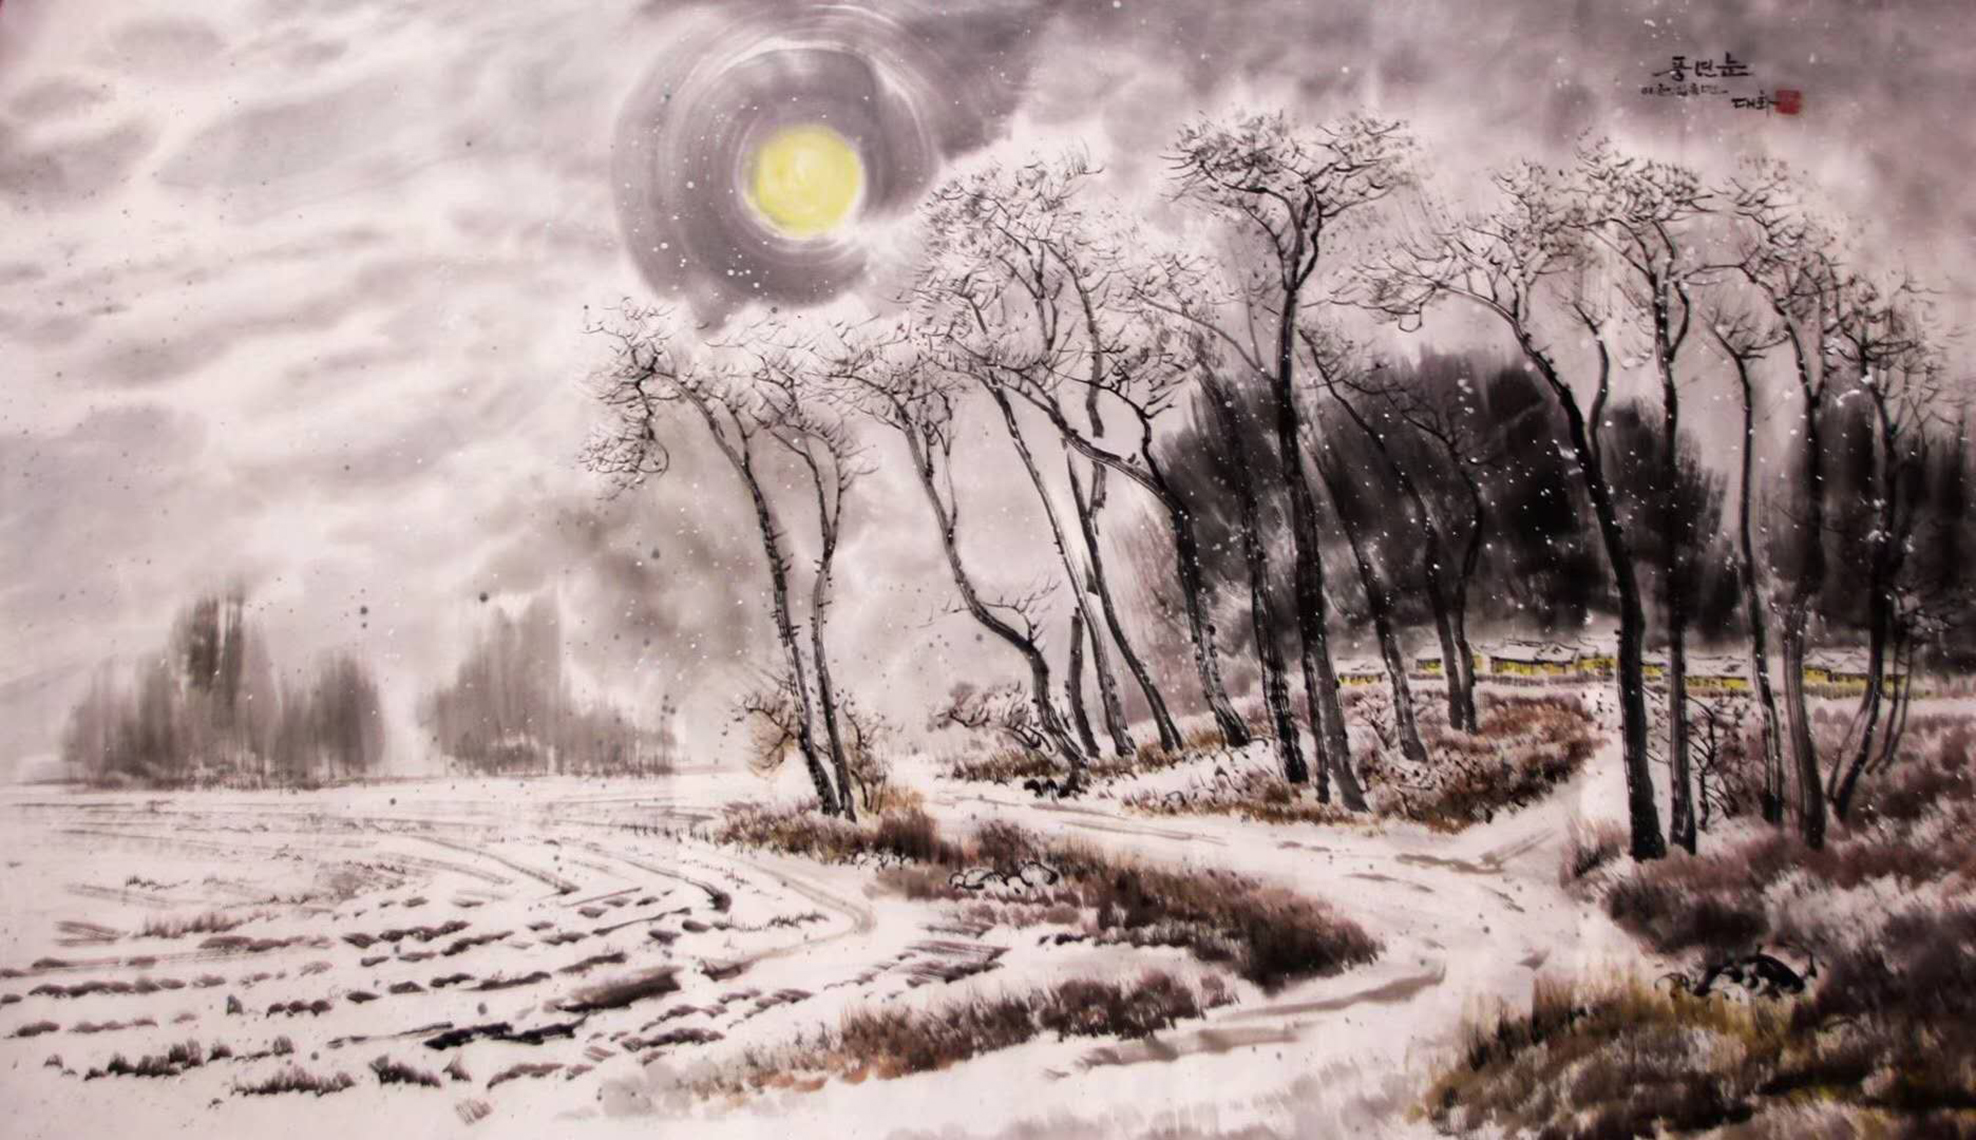 《银色的村庄》彩墨画,大雪后,天气慢慢放晴,银装素裹的乡村,人间美景